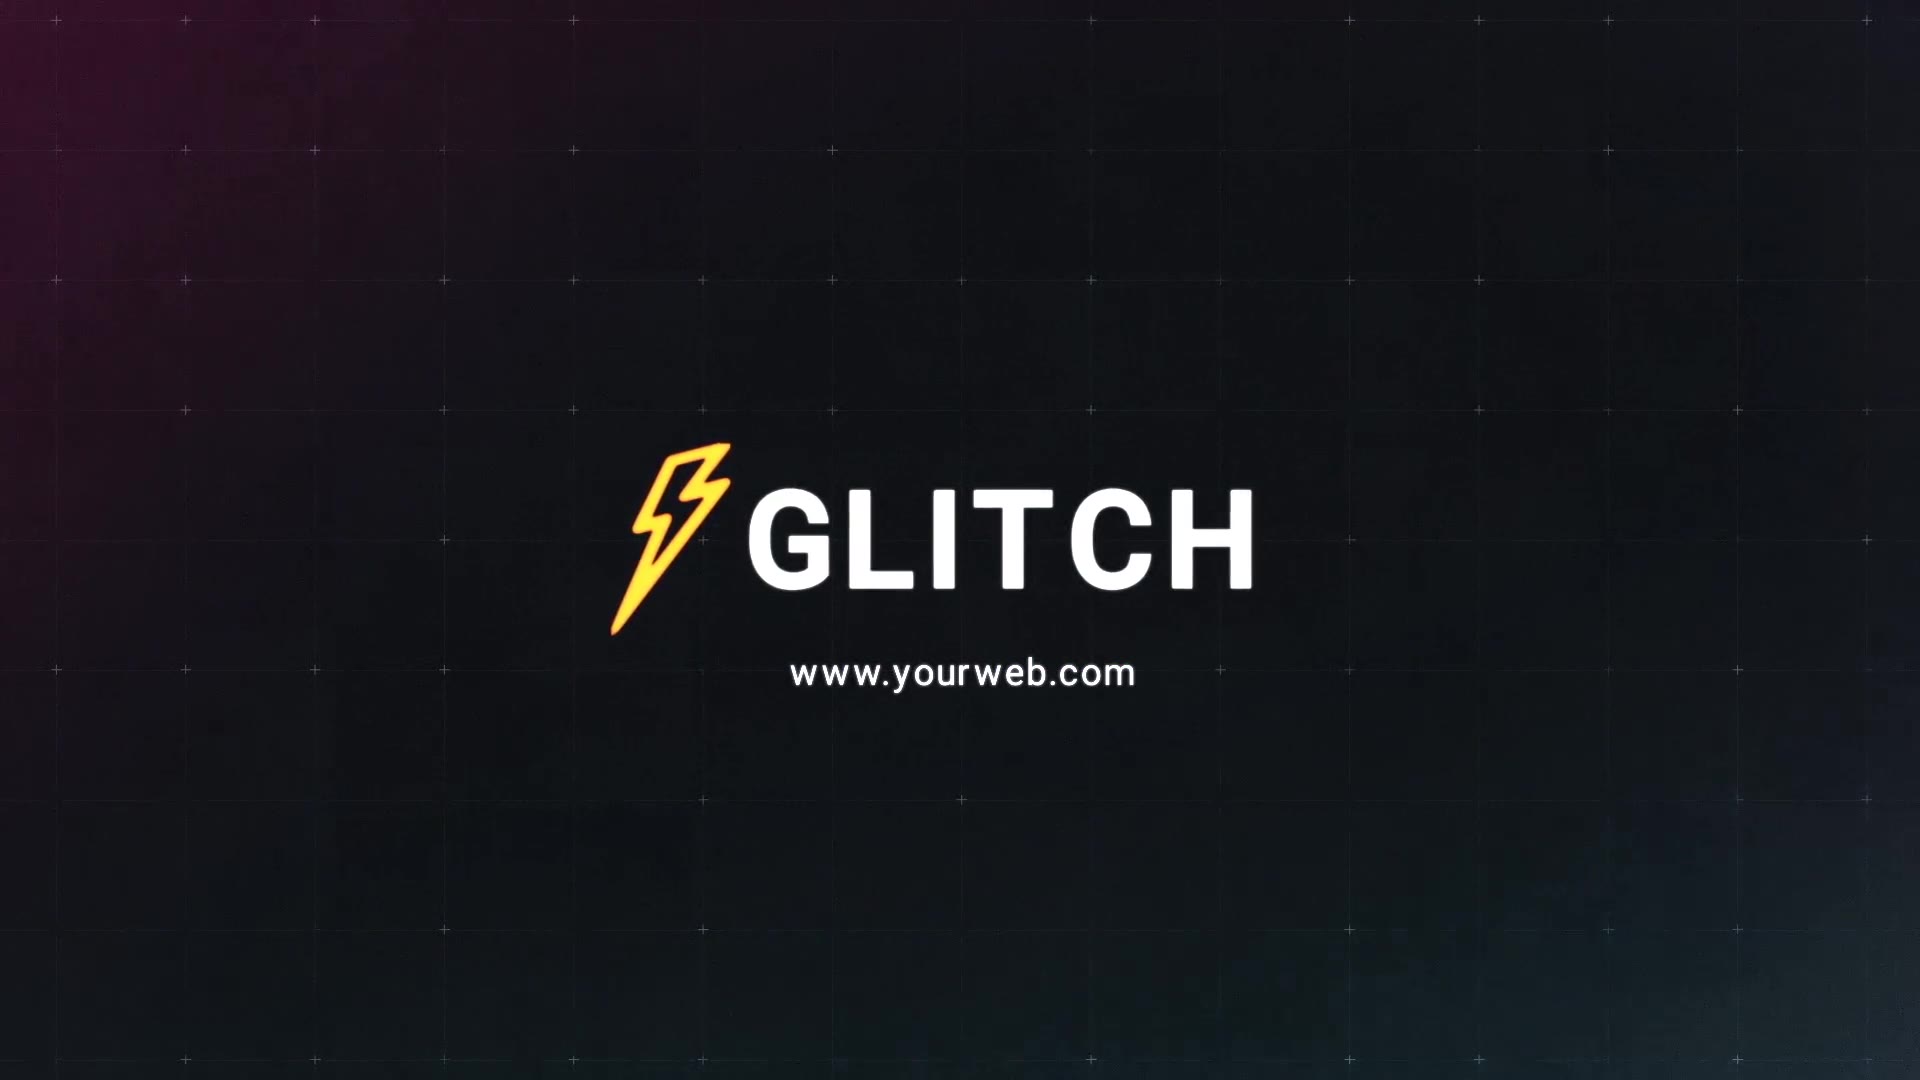 Glitch Logo Premiere Pro MOGRT Videohive 25745727 Premiere Pro Image 7